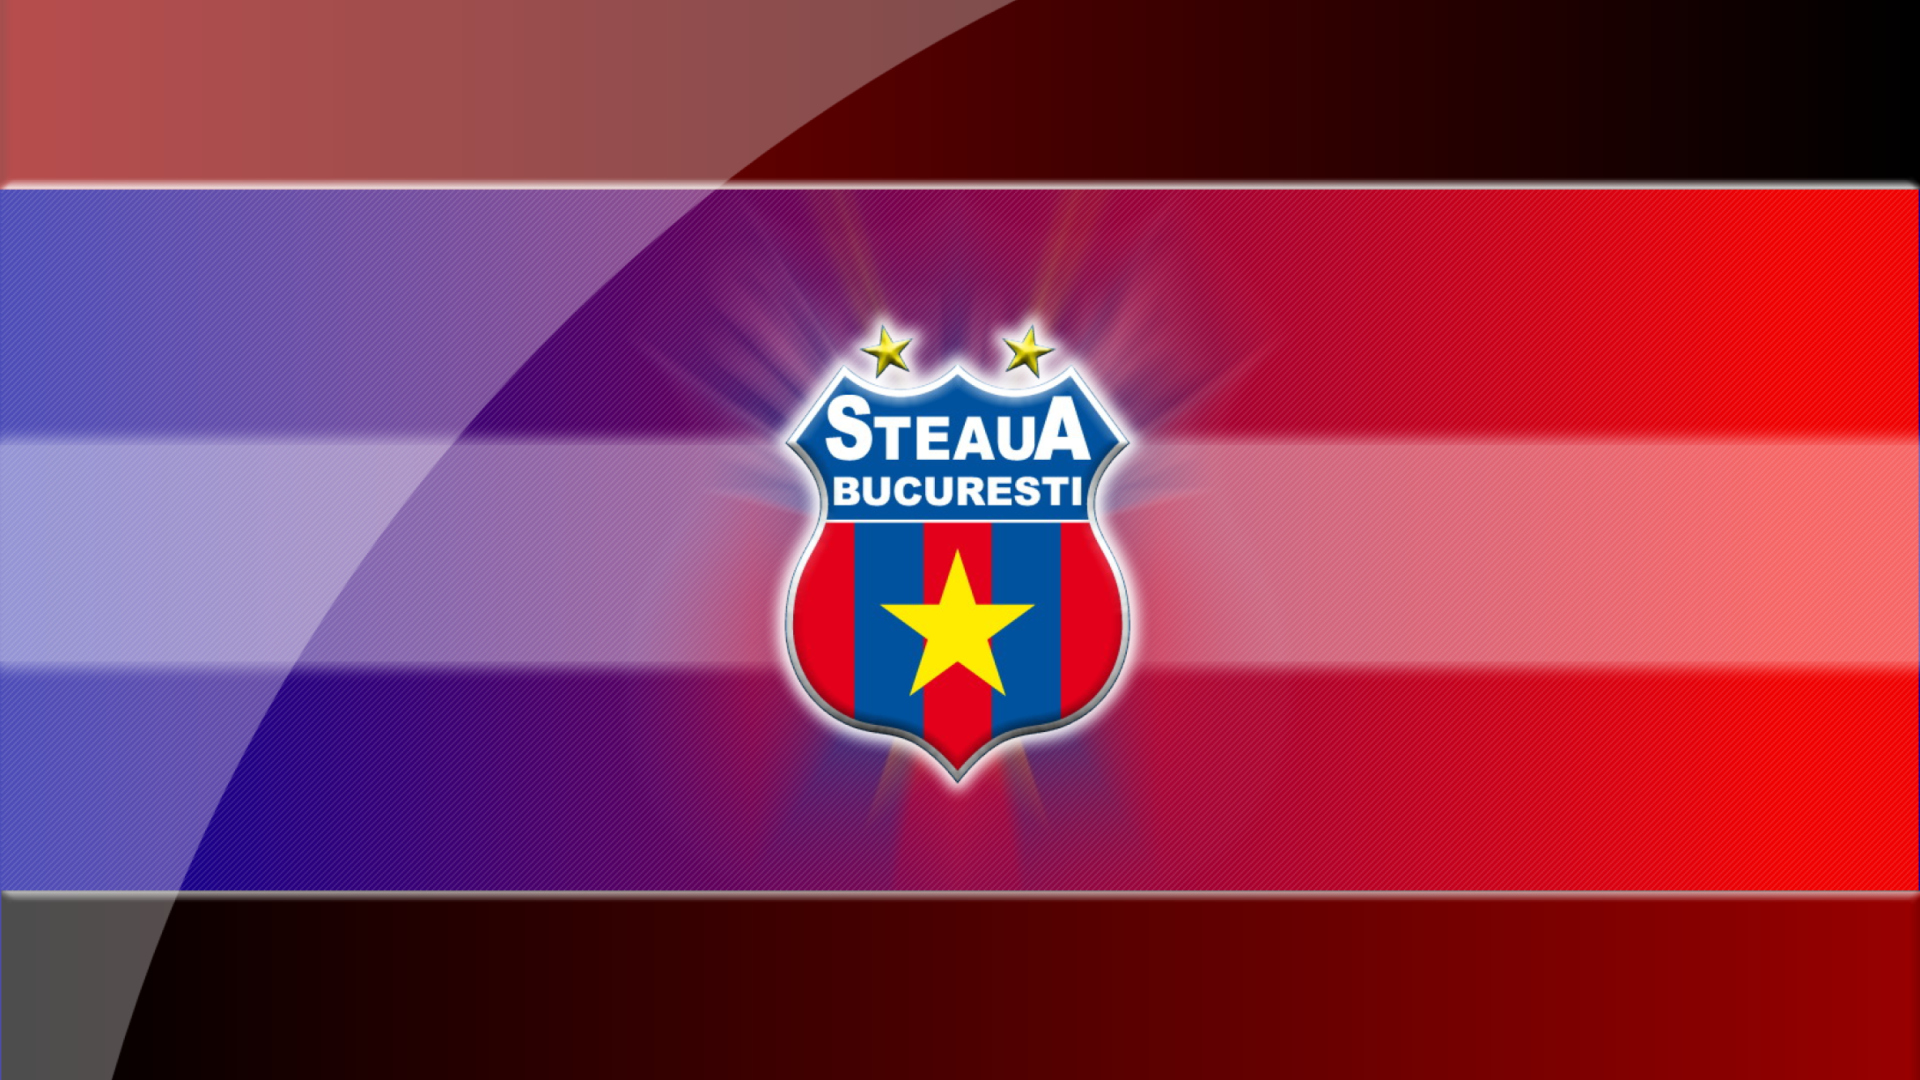 Steaua Bucuresti wallpaper 1920x1080